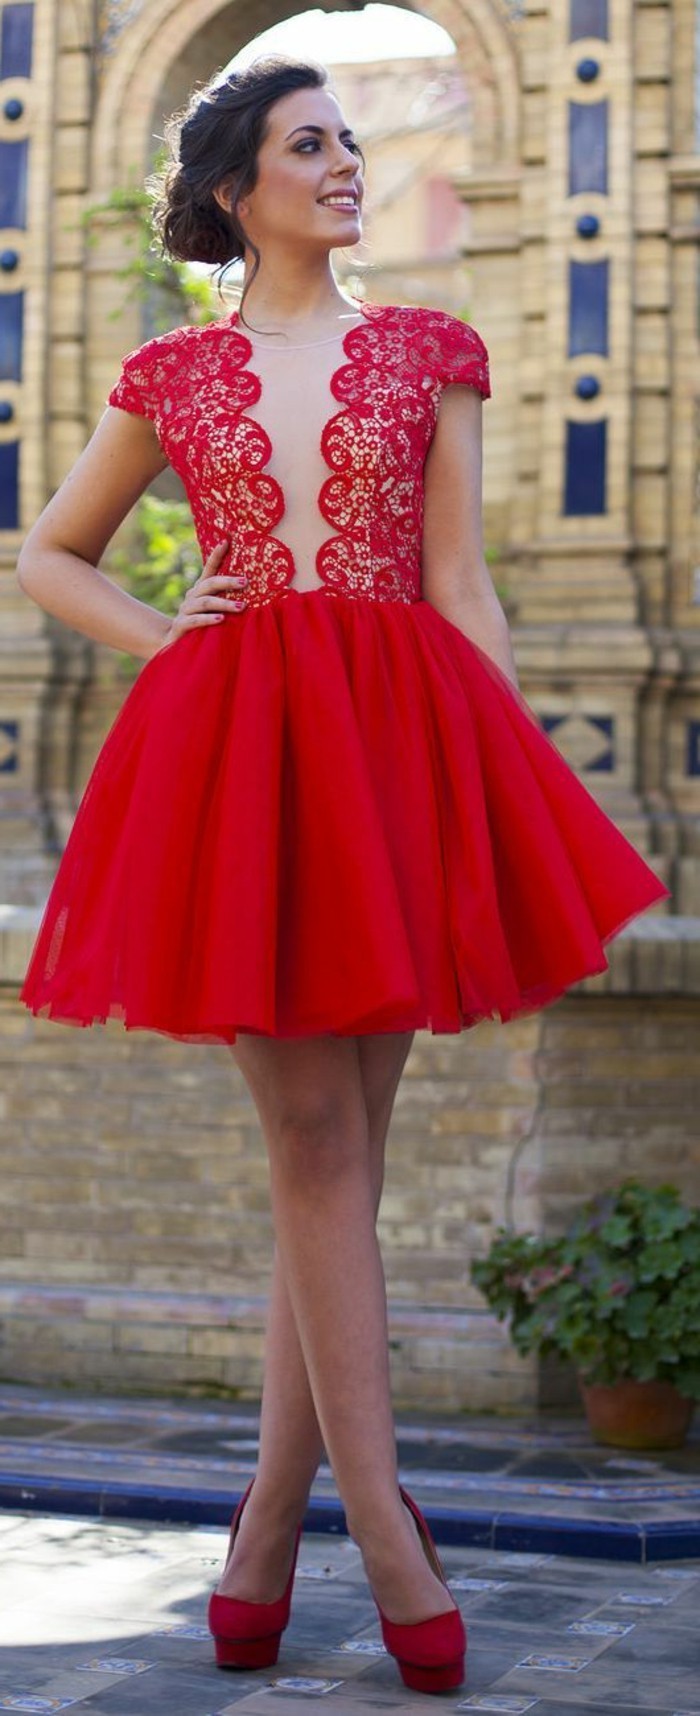 Dress-svečane crvene kratke haljina-sa šiljatim cipele-s visokom petom visoke kose-tamno smeđe hair-